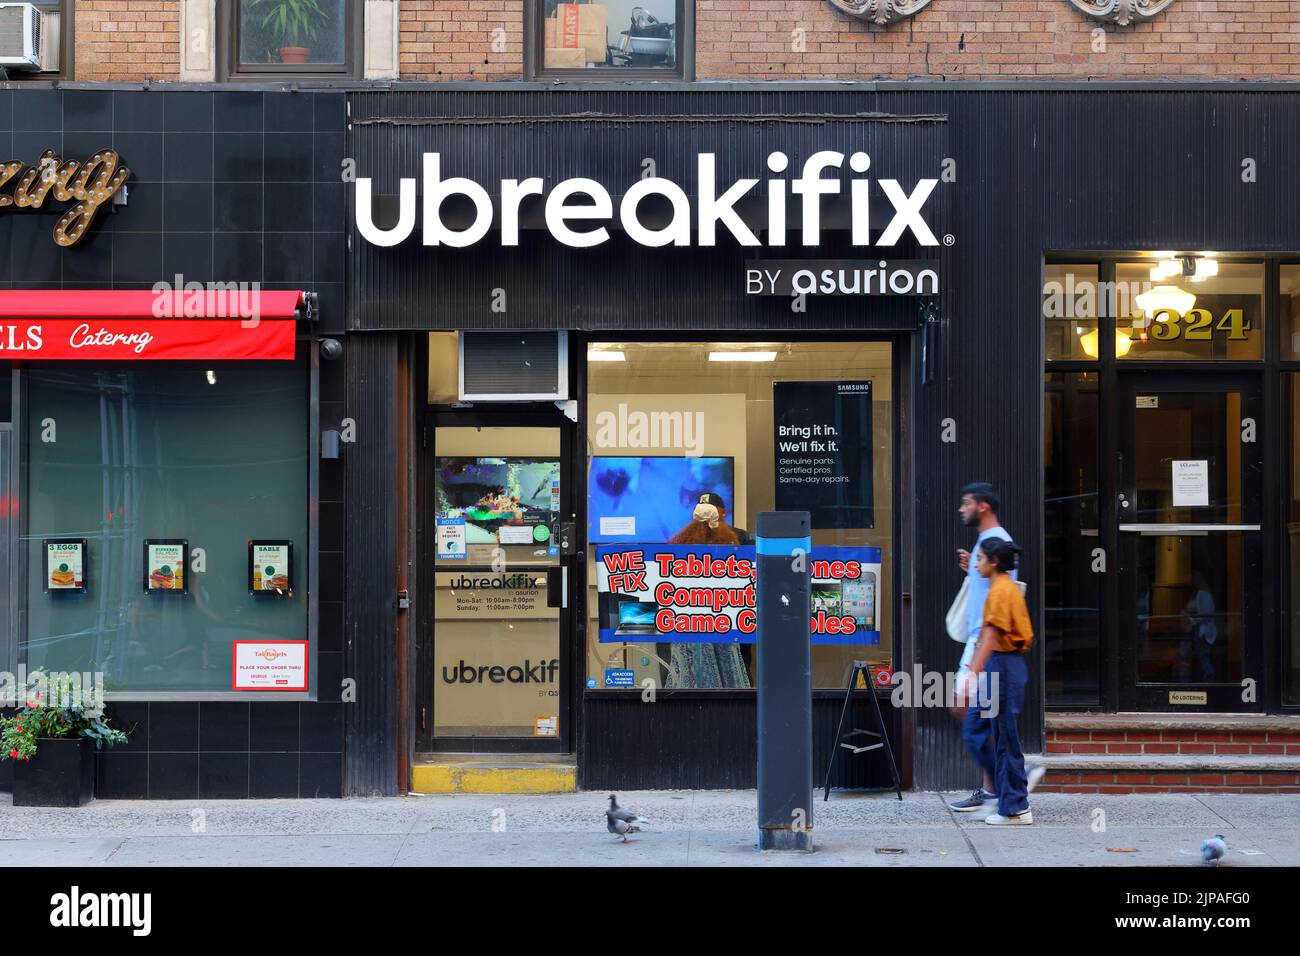 UBreakiFix por Asurion, 1324 Lexington Ave, Nueva York, foto del escaparate de una cadena de tiendas de reparación de computadoras en el Carnegie Hill Upper East Side de Manhattan Foto de stock